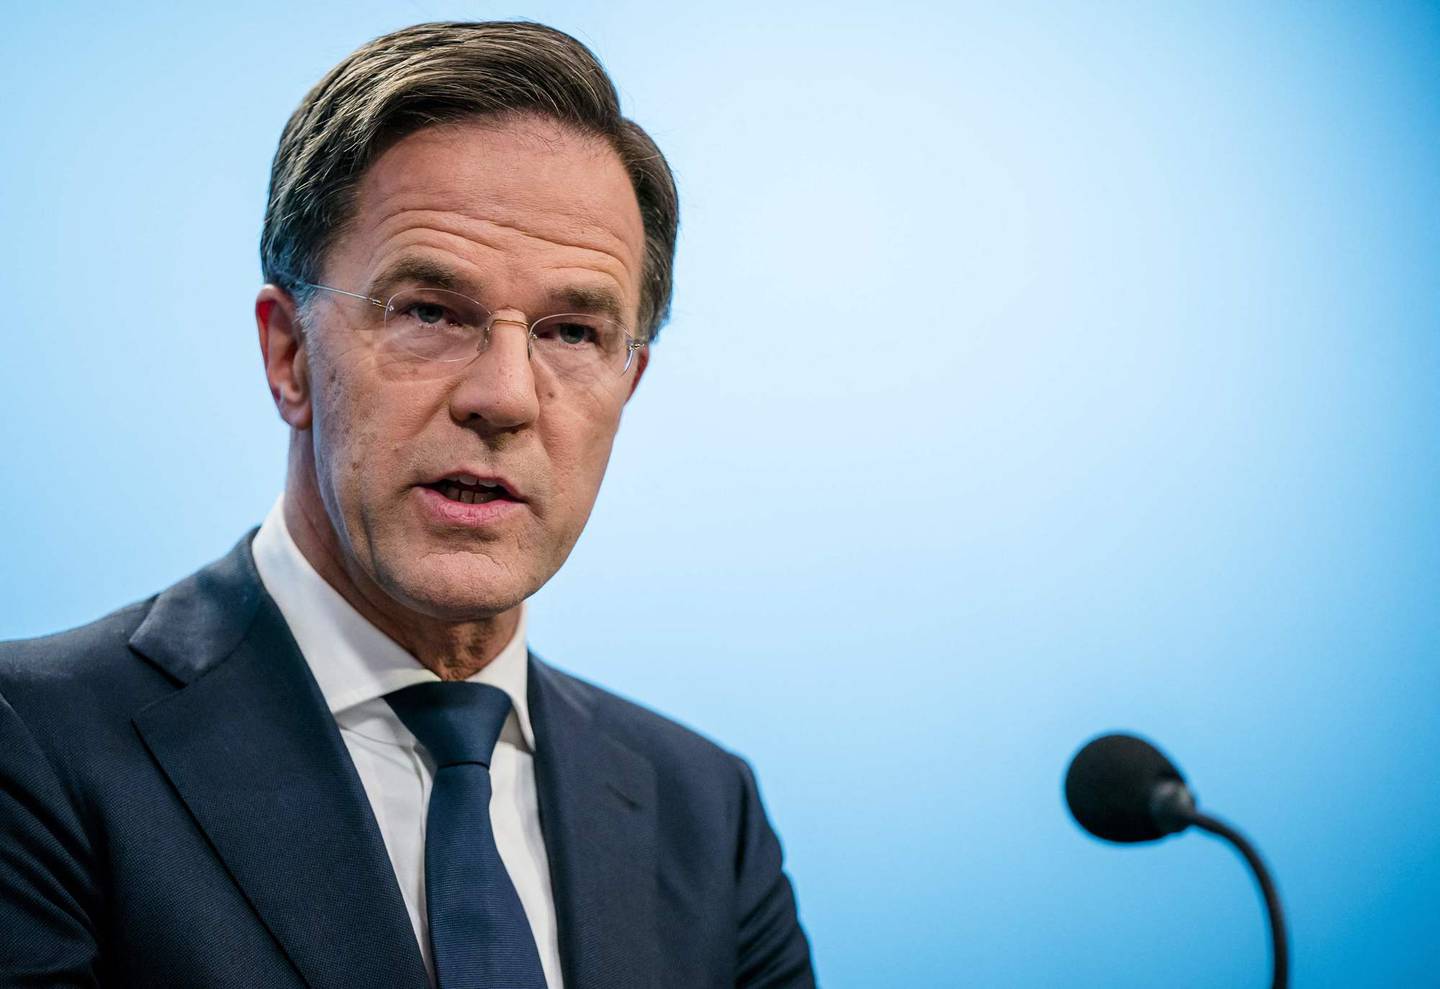 Nederlands statsminister Mark Rutte nevnes også som mulig ny Nato-sjef.